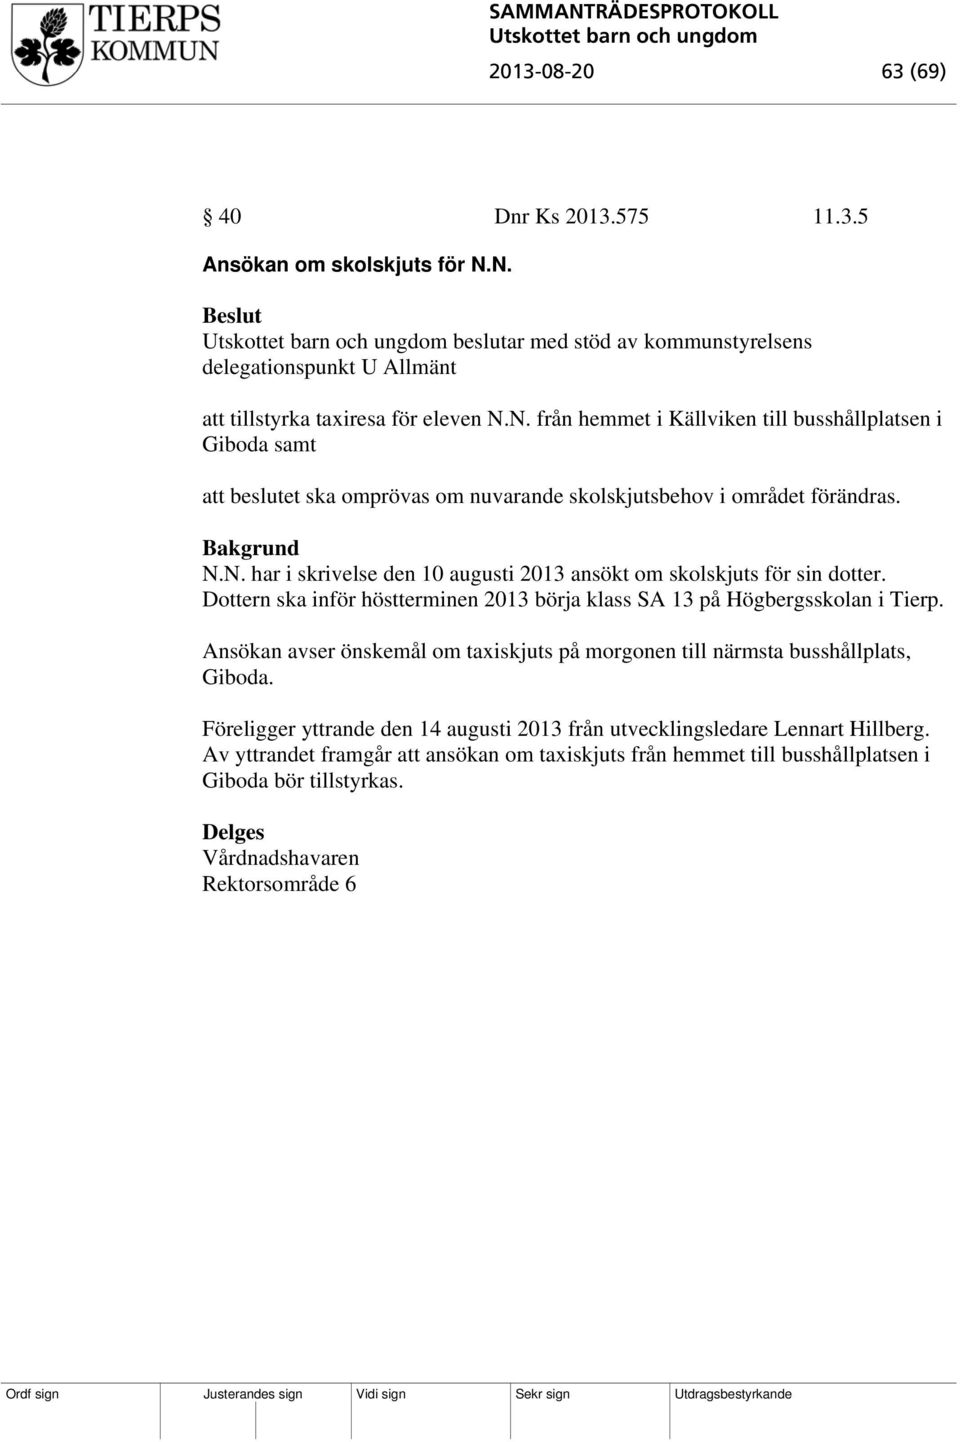 N.N. har i skrivelse den 10 augusti 2013 ansökt om skolskjuts för sin dotter. Dottern ska inför höstterminen 2013 börja klass SA 13 på Högbergsskolan i Tierp.